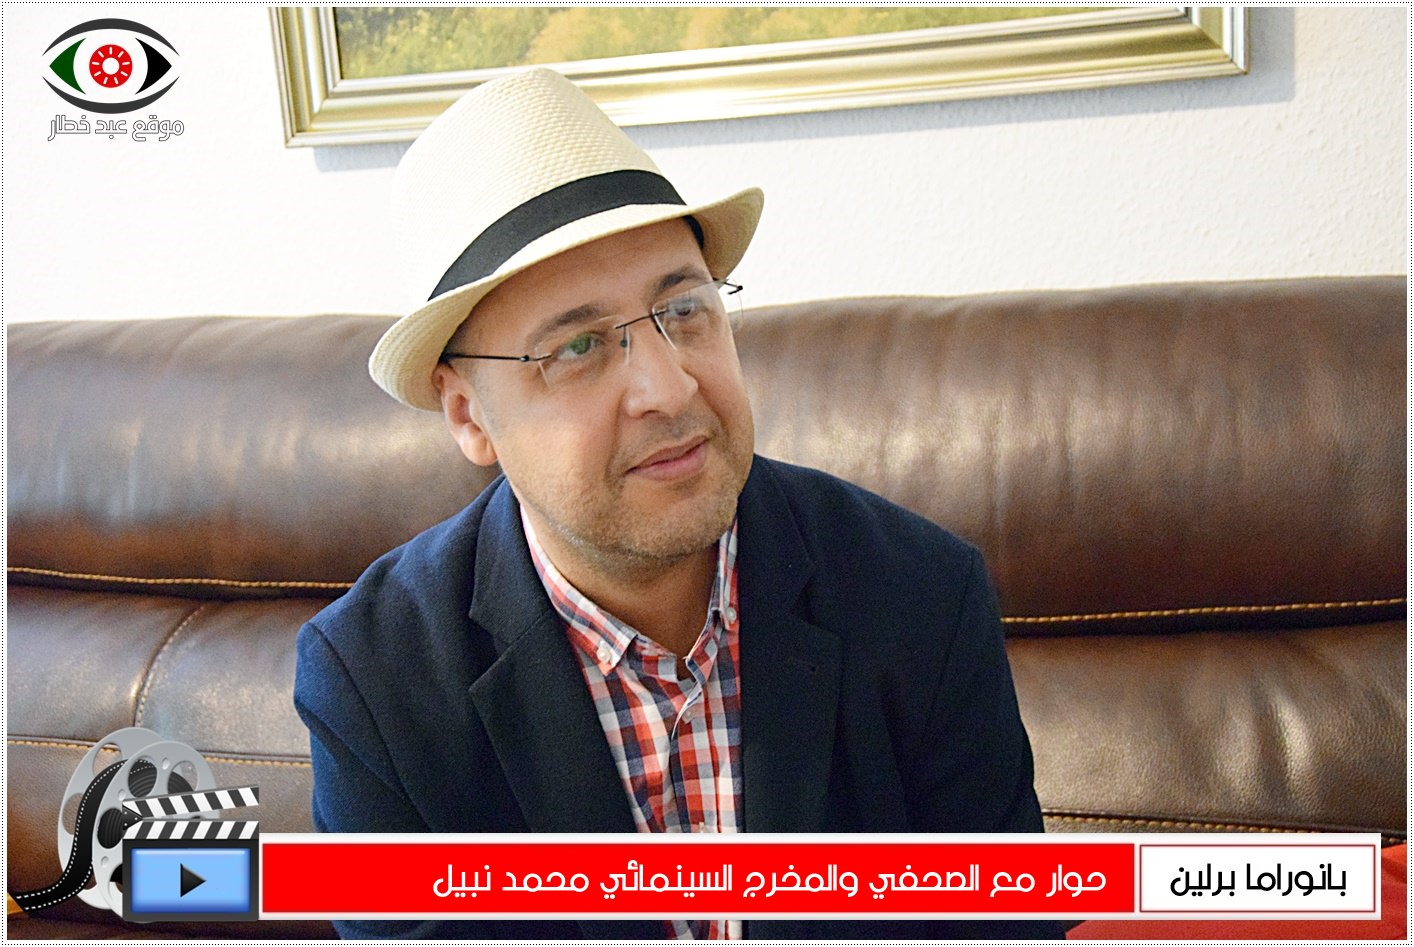 حوار مع الصحافي و السينمائي محمد نبيل